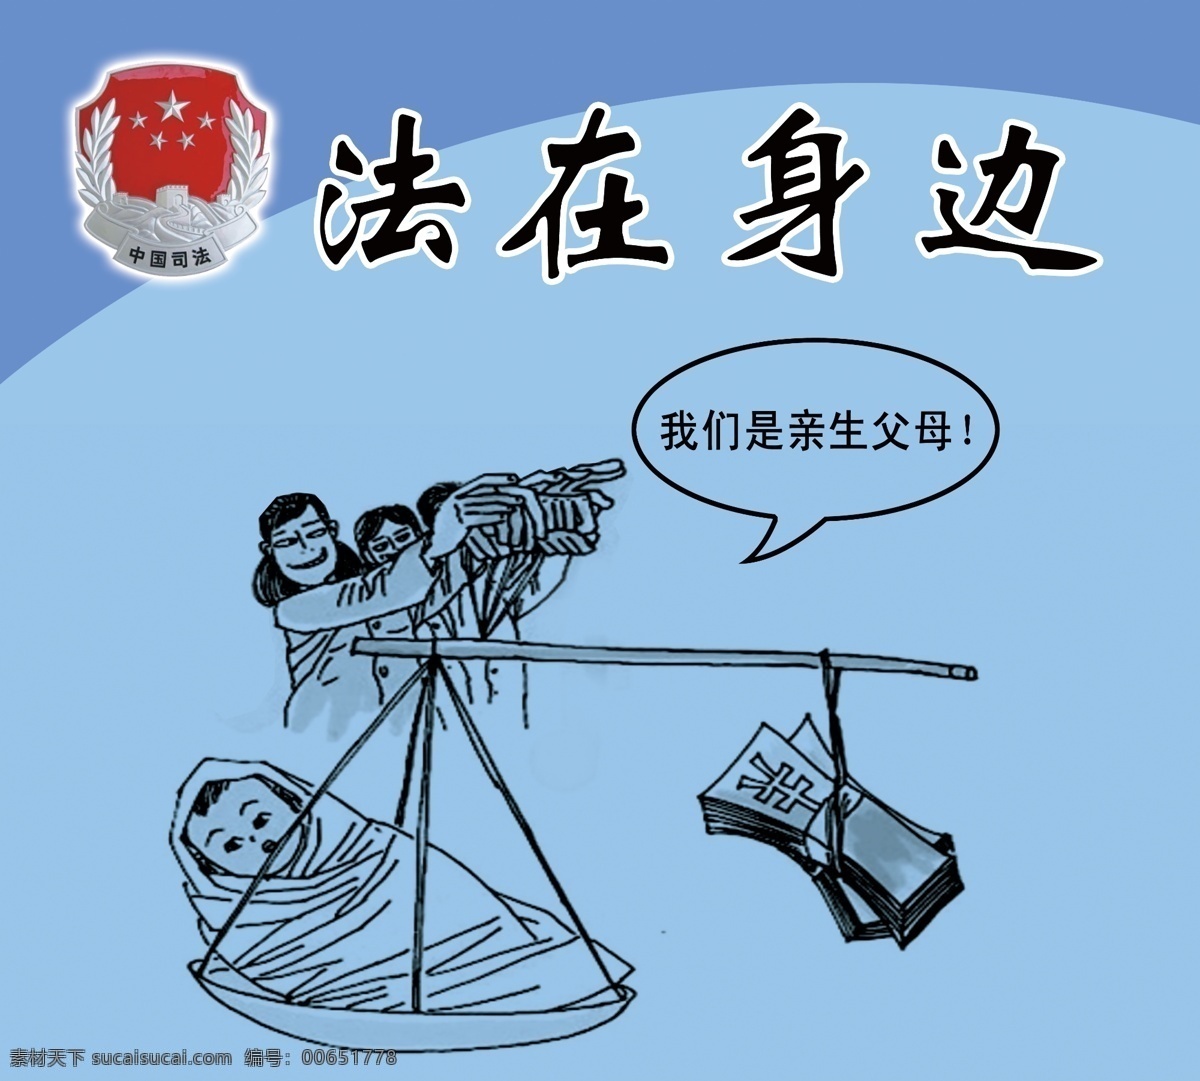 法在身边 法治 宣传 漫画 五 普法宣传 系列 女 职工 劳动保护 法治漫画系列 青色 天蓝色